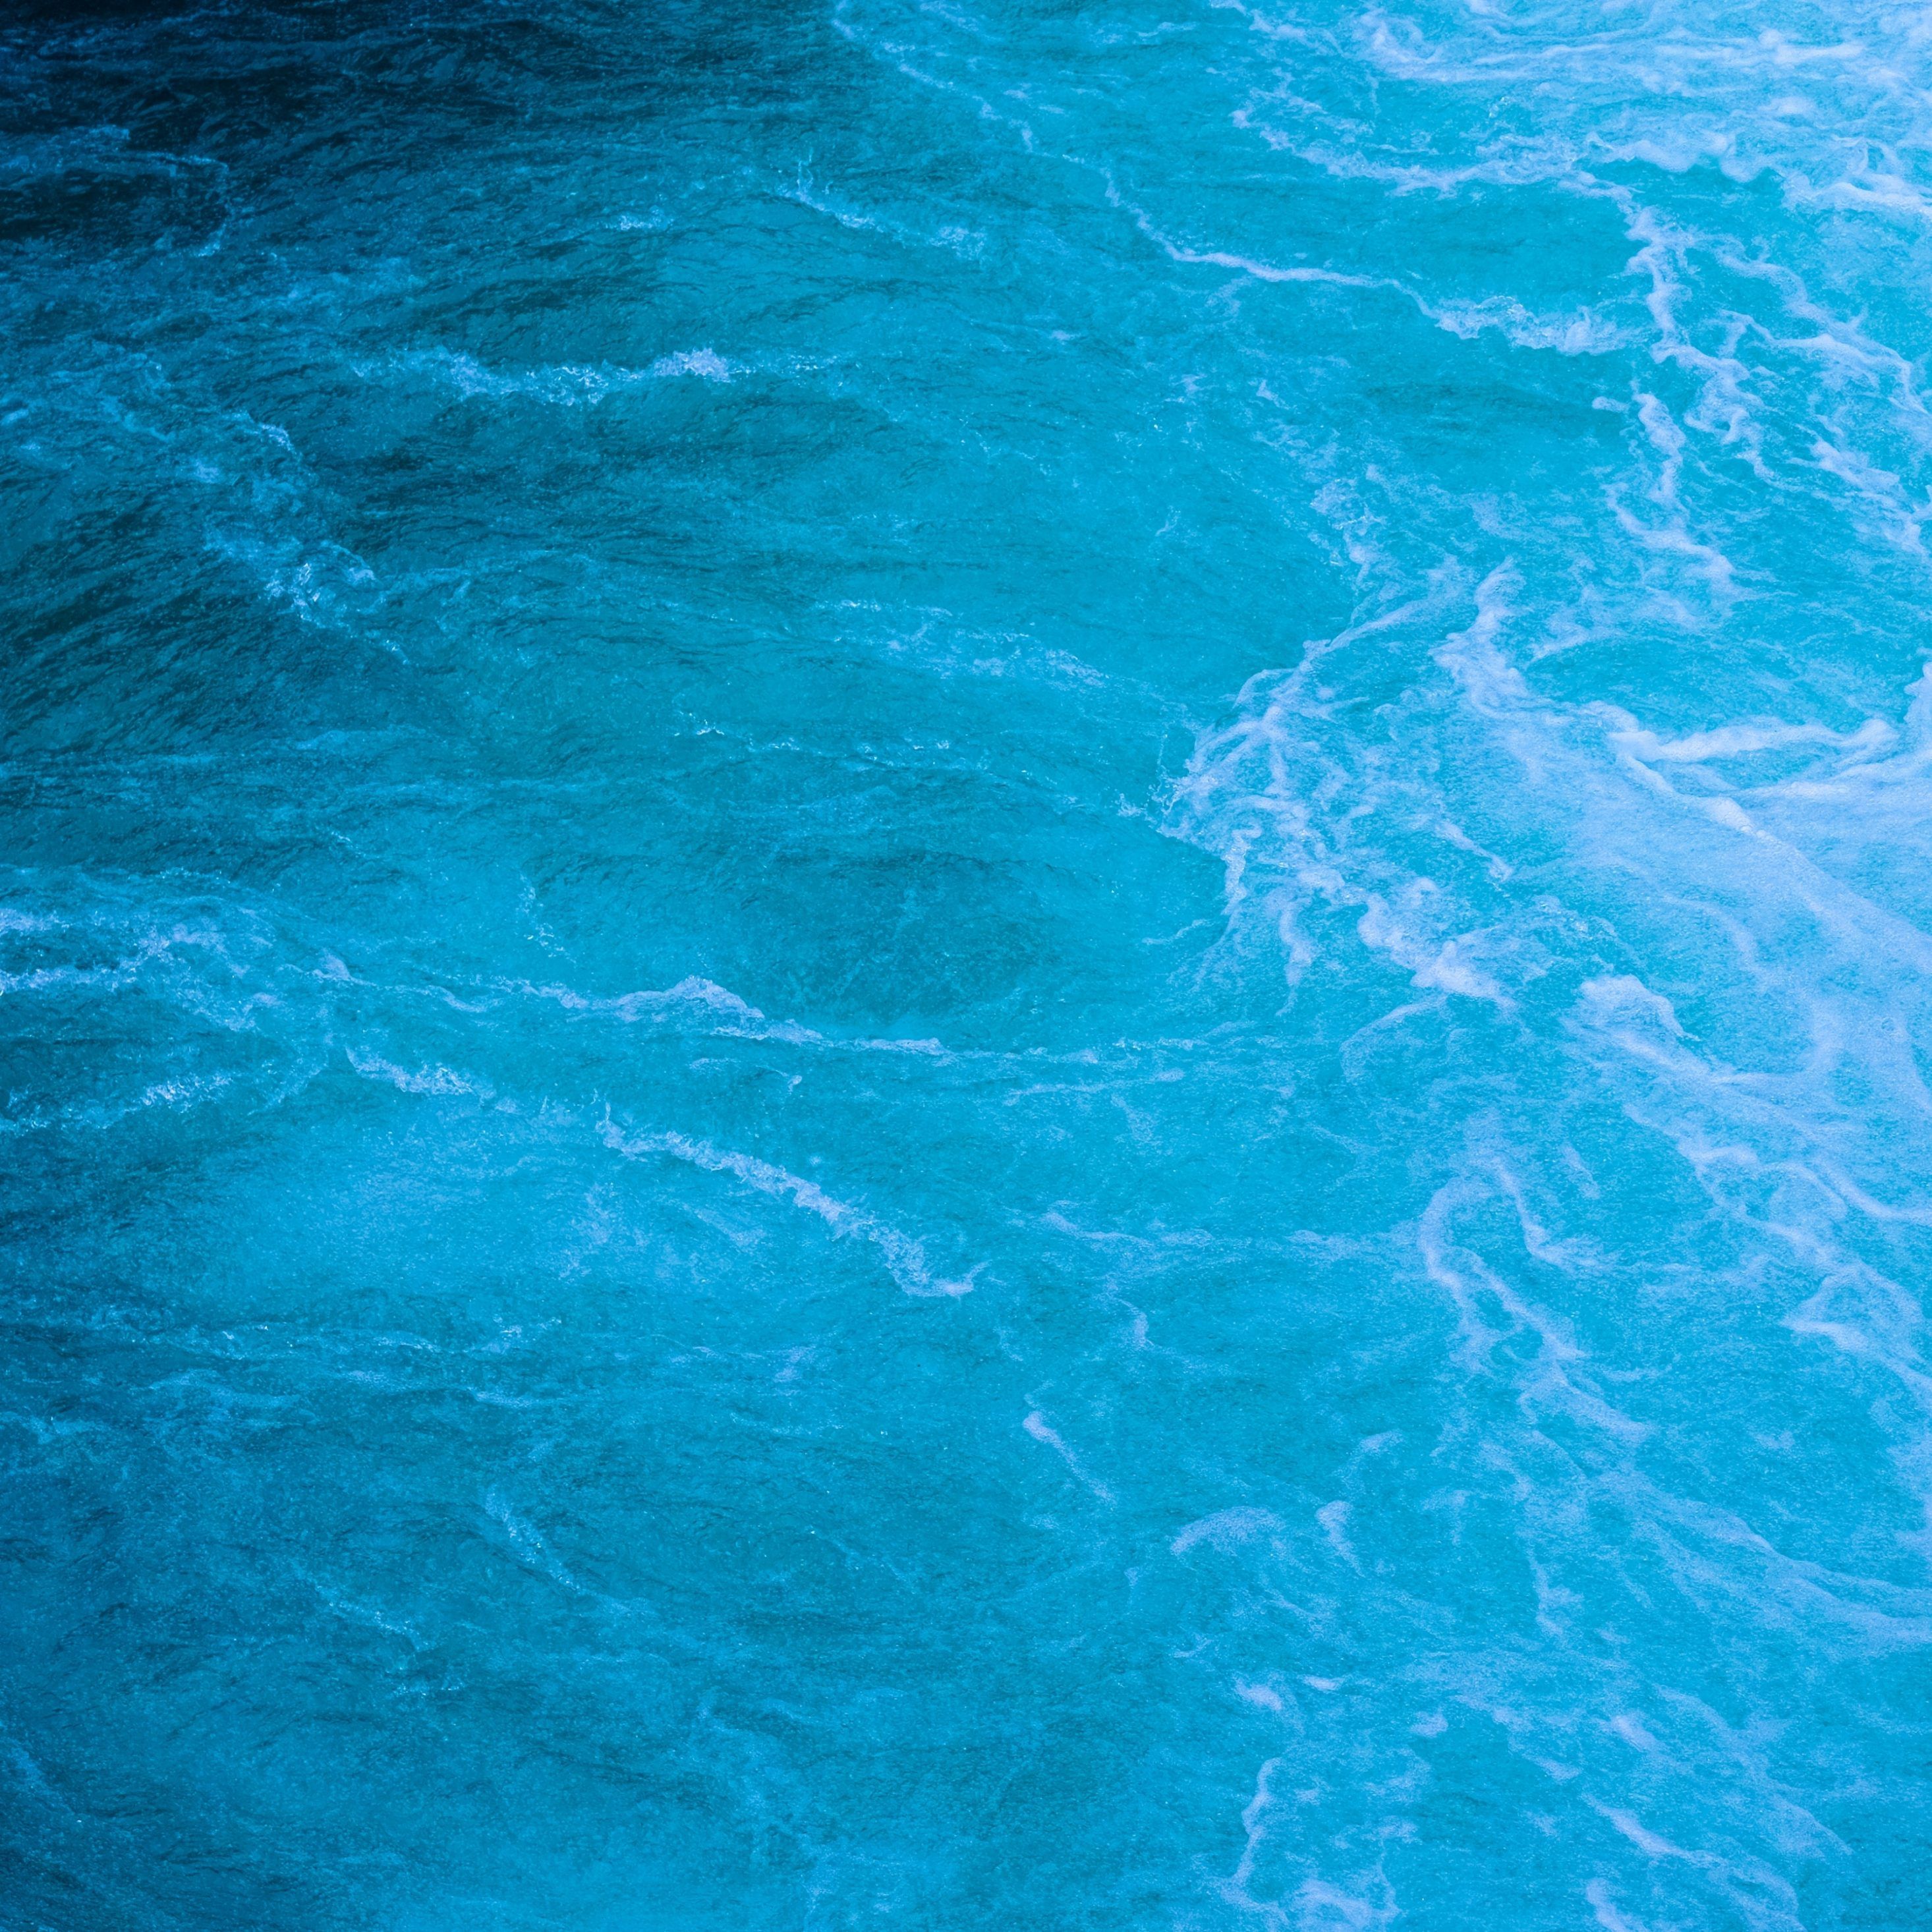 Blue Sea Waves Aqua Water Texture iPad Wallpaper iPad Wallpaper 4k iPad Wallpaper 5k free download iPad Pro, iPad Mini, iPad Air, iOS, iPadOS, Parallax, iPad retina Wallpaper